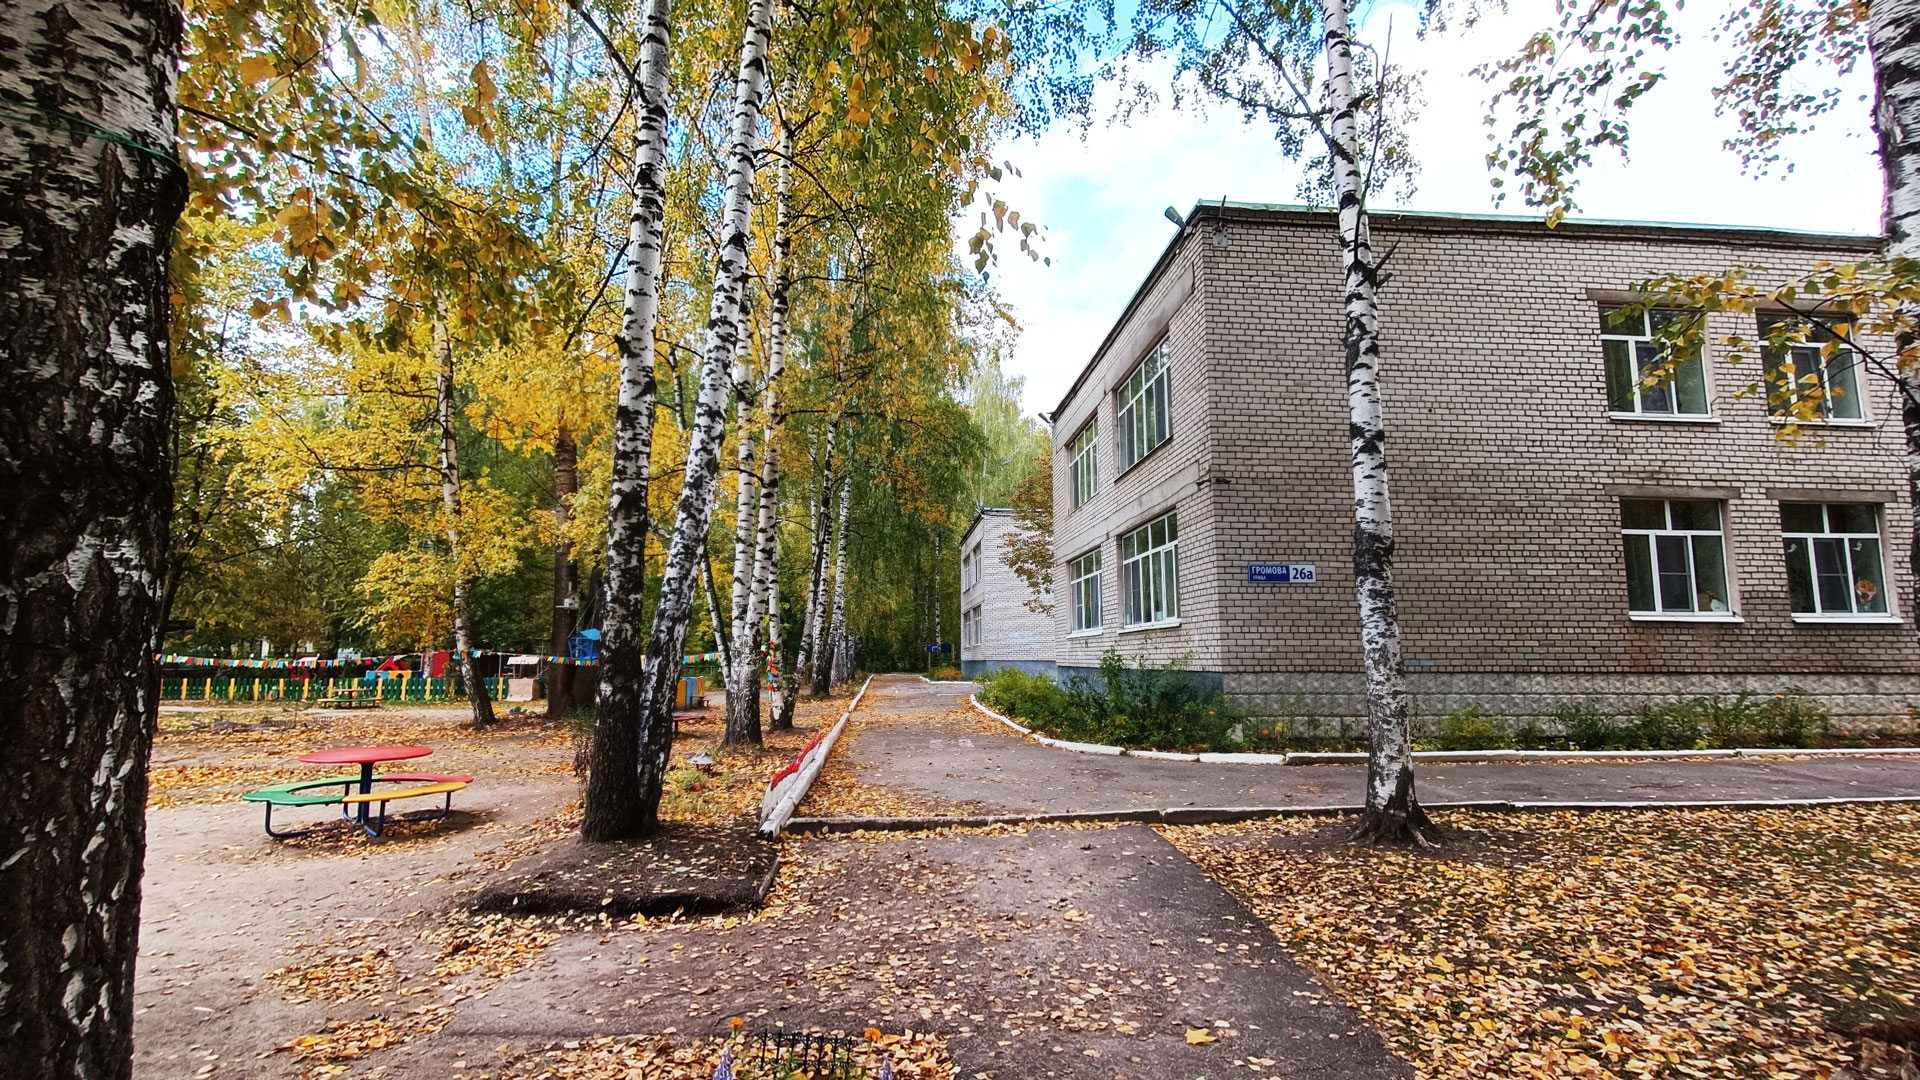 Детский сад 93 Ярославль по ул. Громова, 26а: панорамный вид д/с.